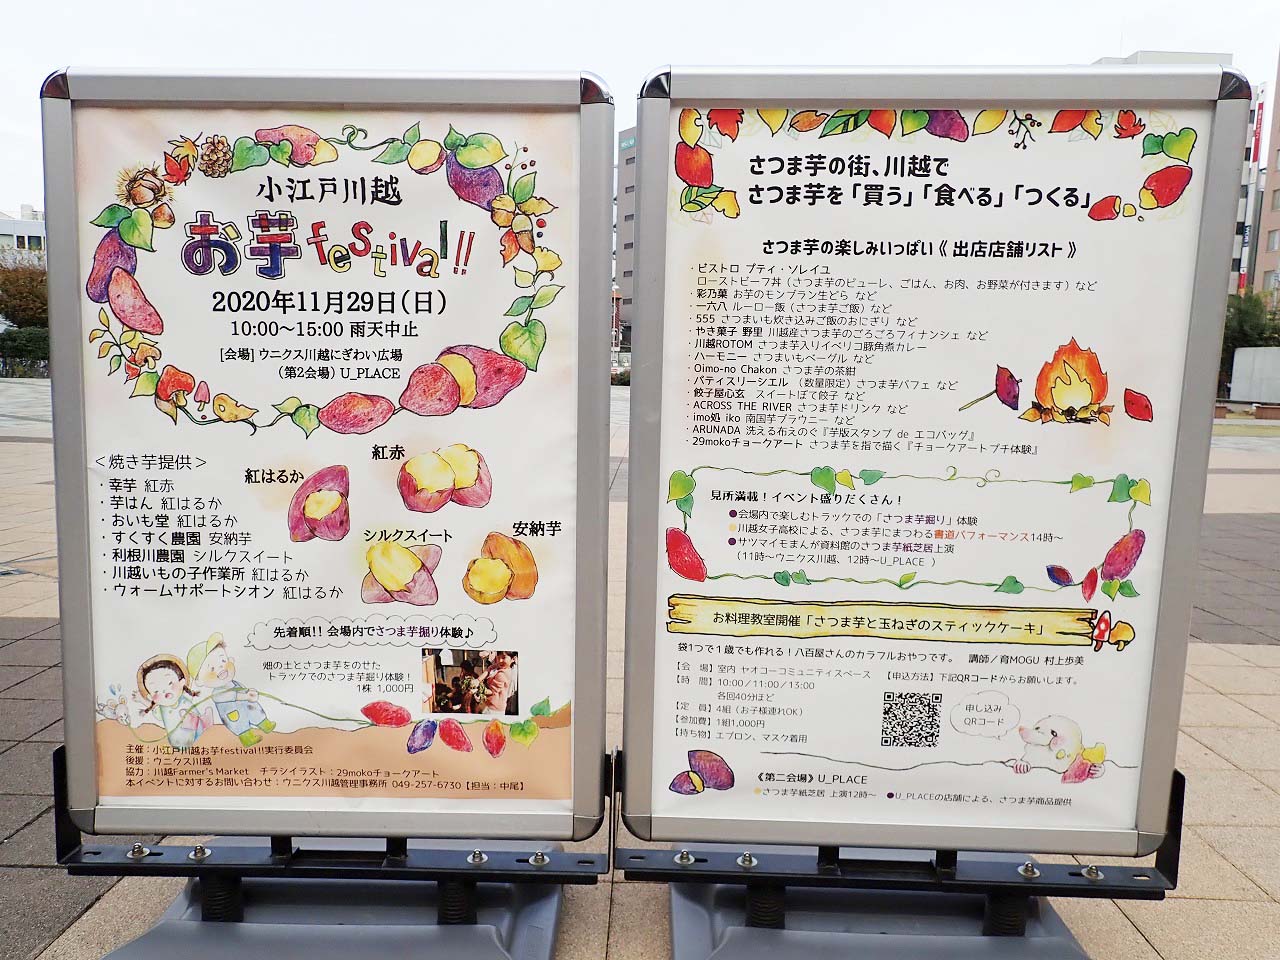 2020年11月に開催予定の「小江戸川越お芋festival!!」の案内